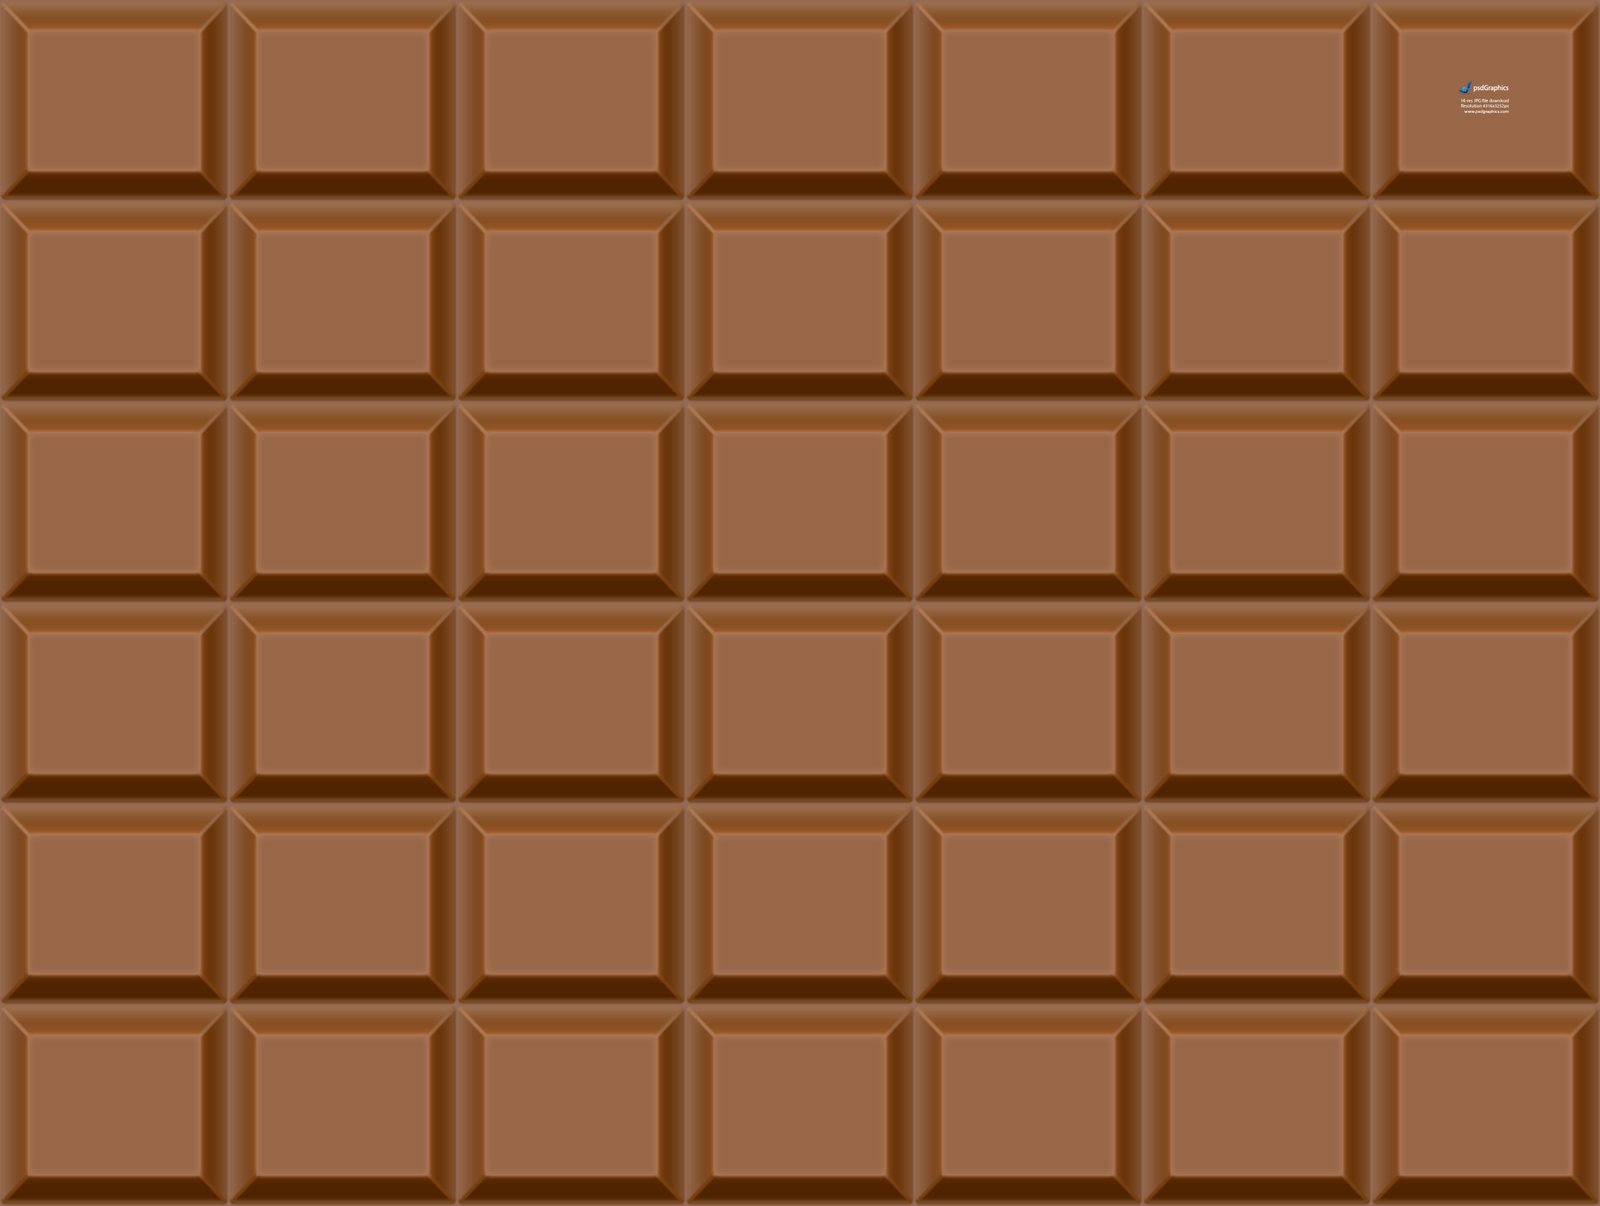 chocolate bar texture